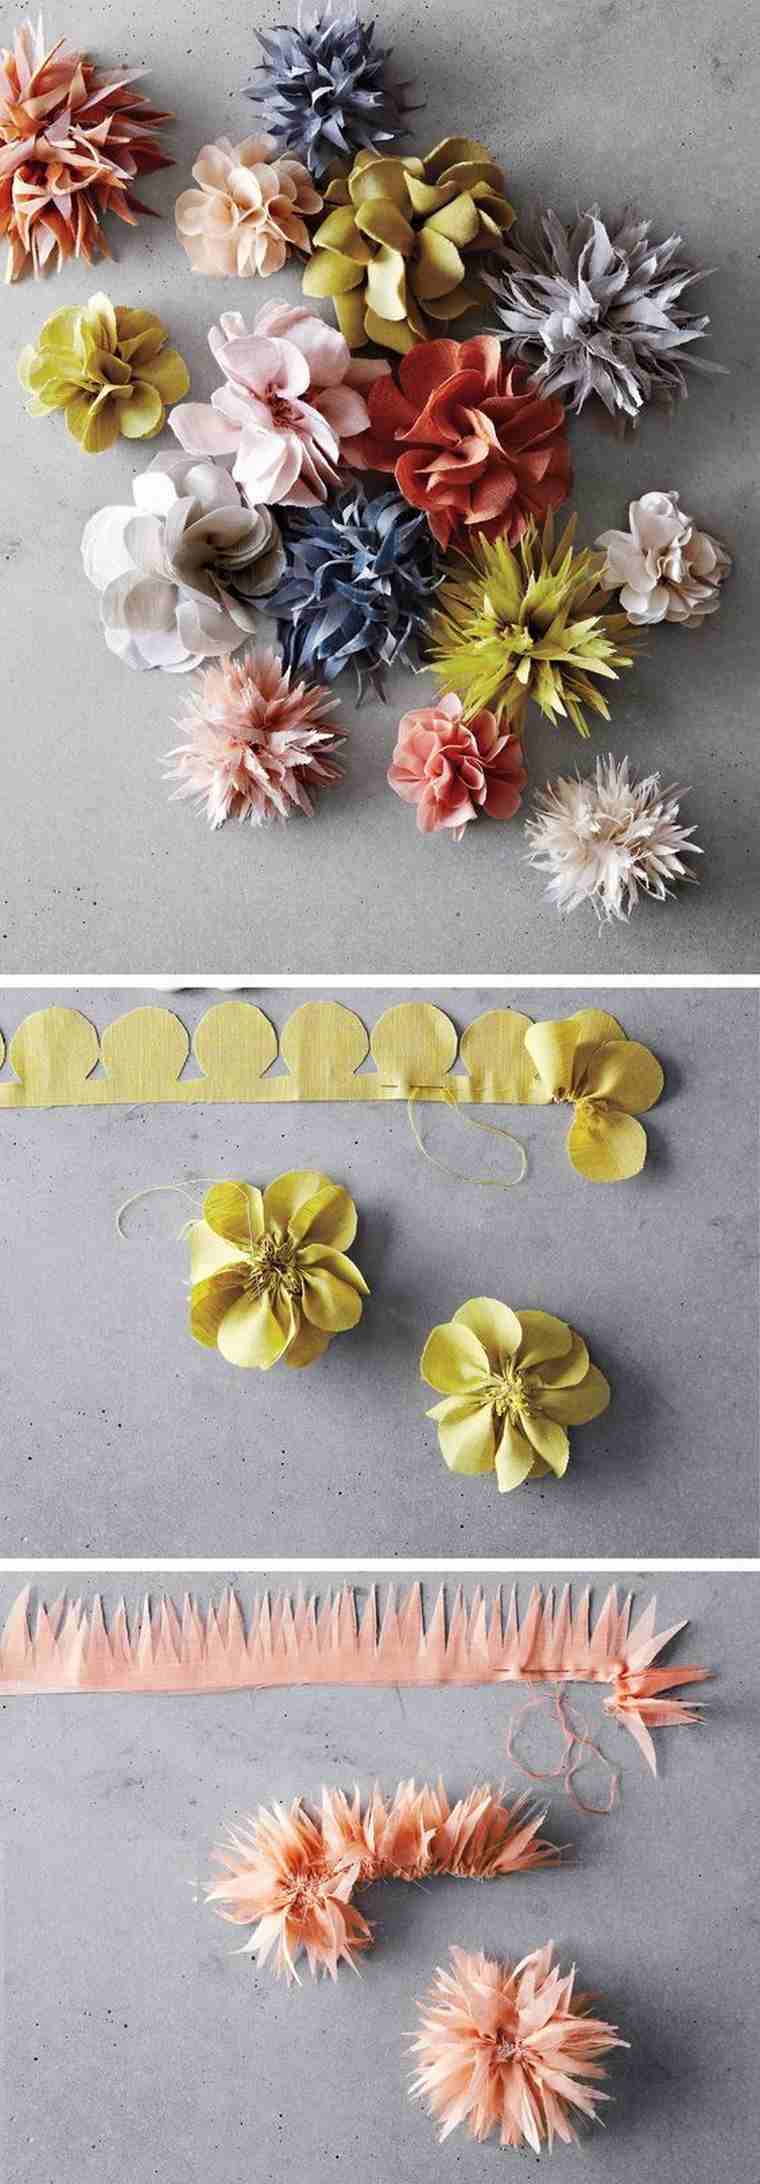 Idea di progetto di cucito fai-da-te facile da realizzare fiori di stoffa